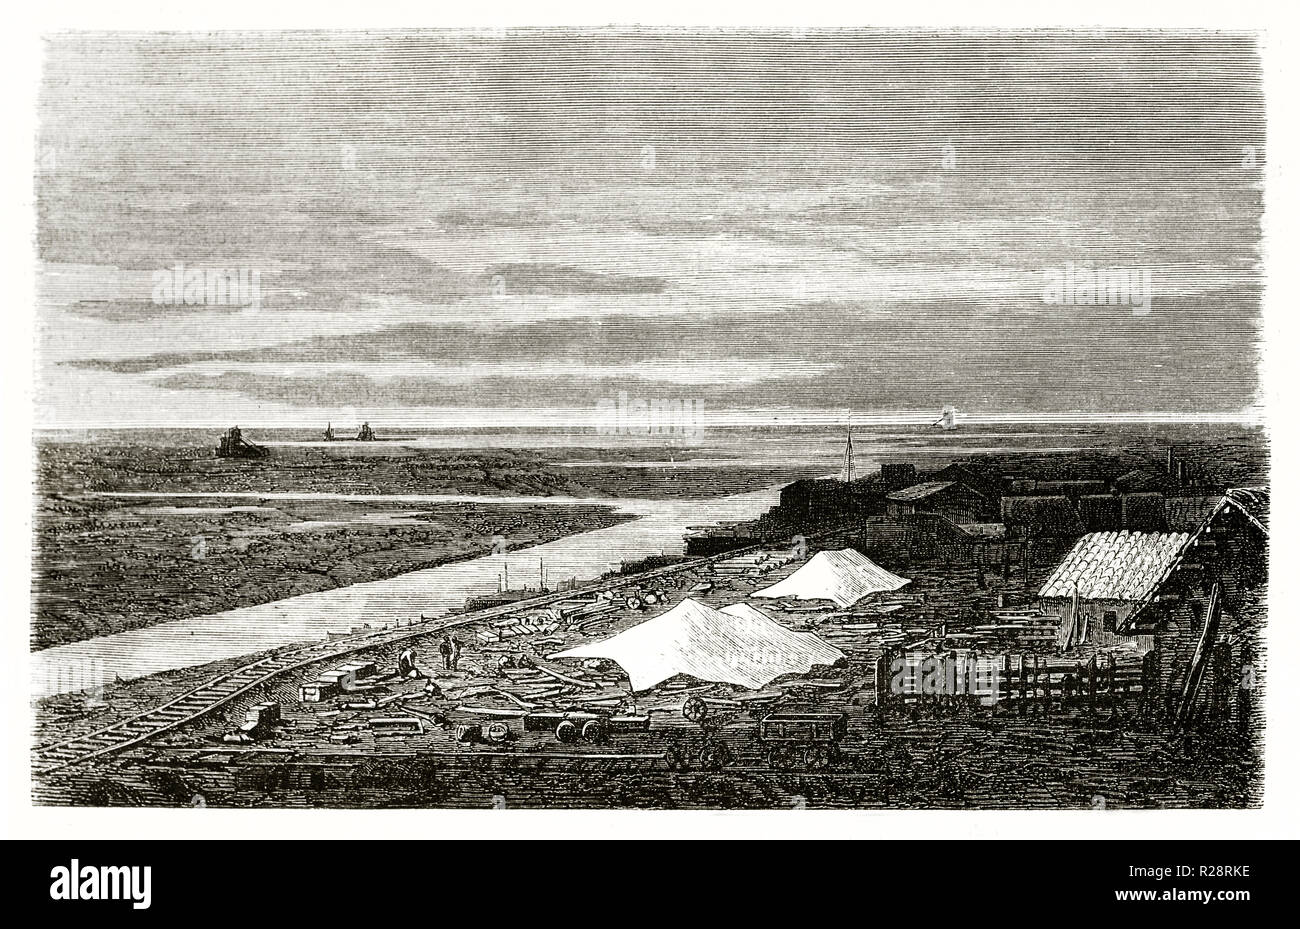 Old view of  Port-Said: Suez canal construction site near lake Manzala, Egypt. By Grenet, publ. on le Tour du Monde, Paris, 1863 Stock Photo